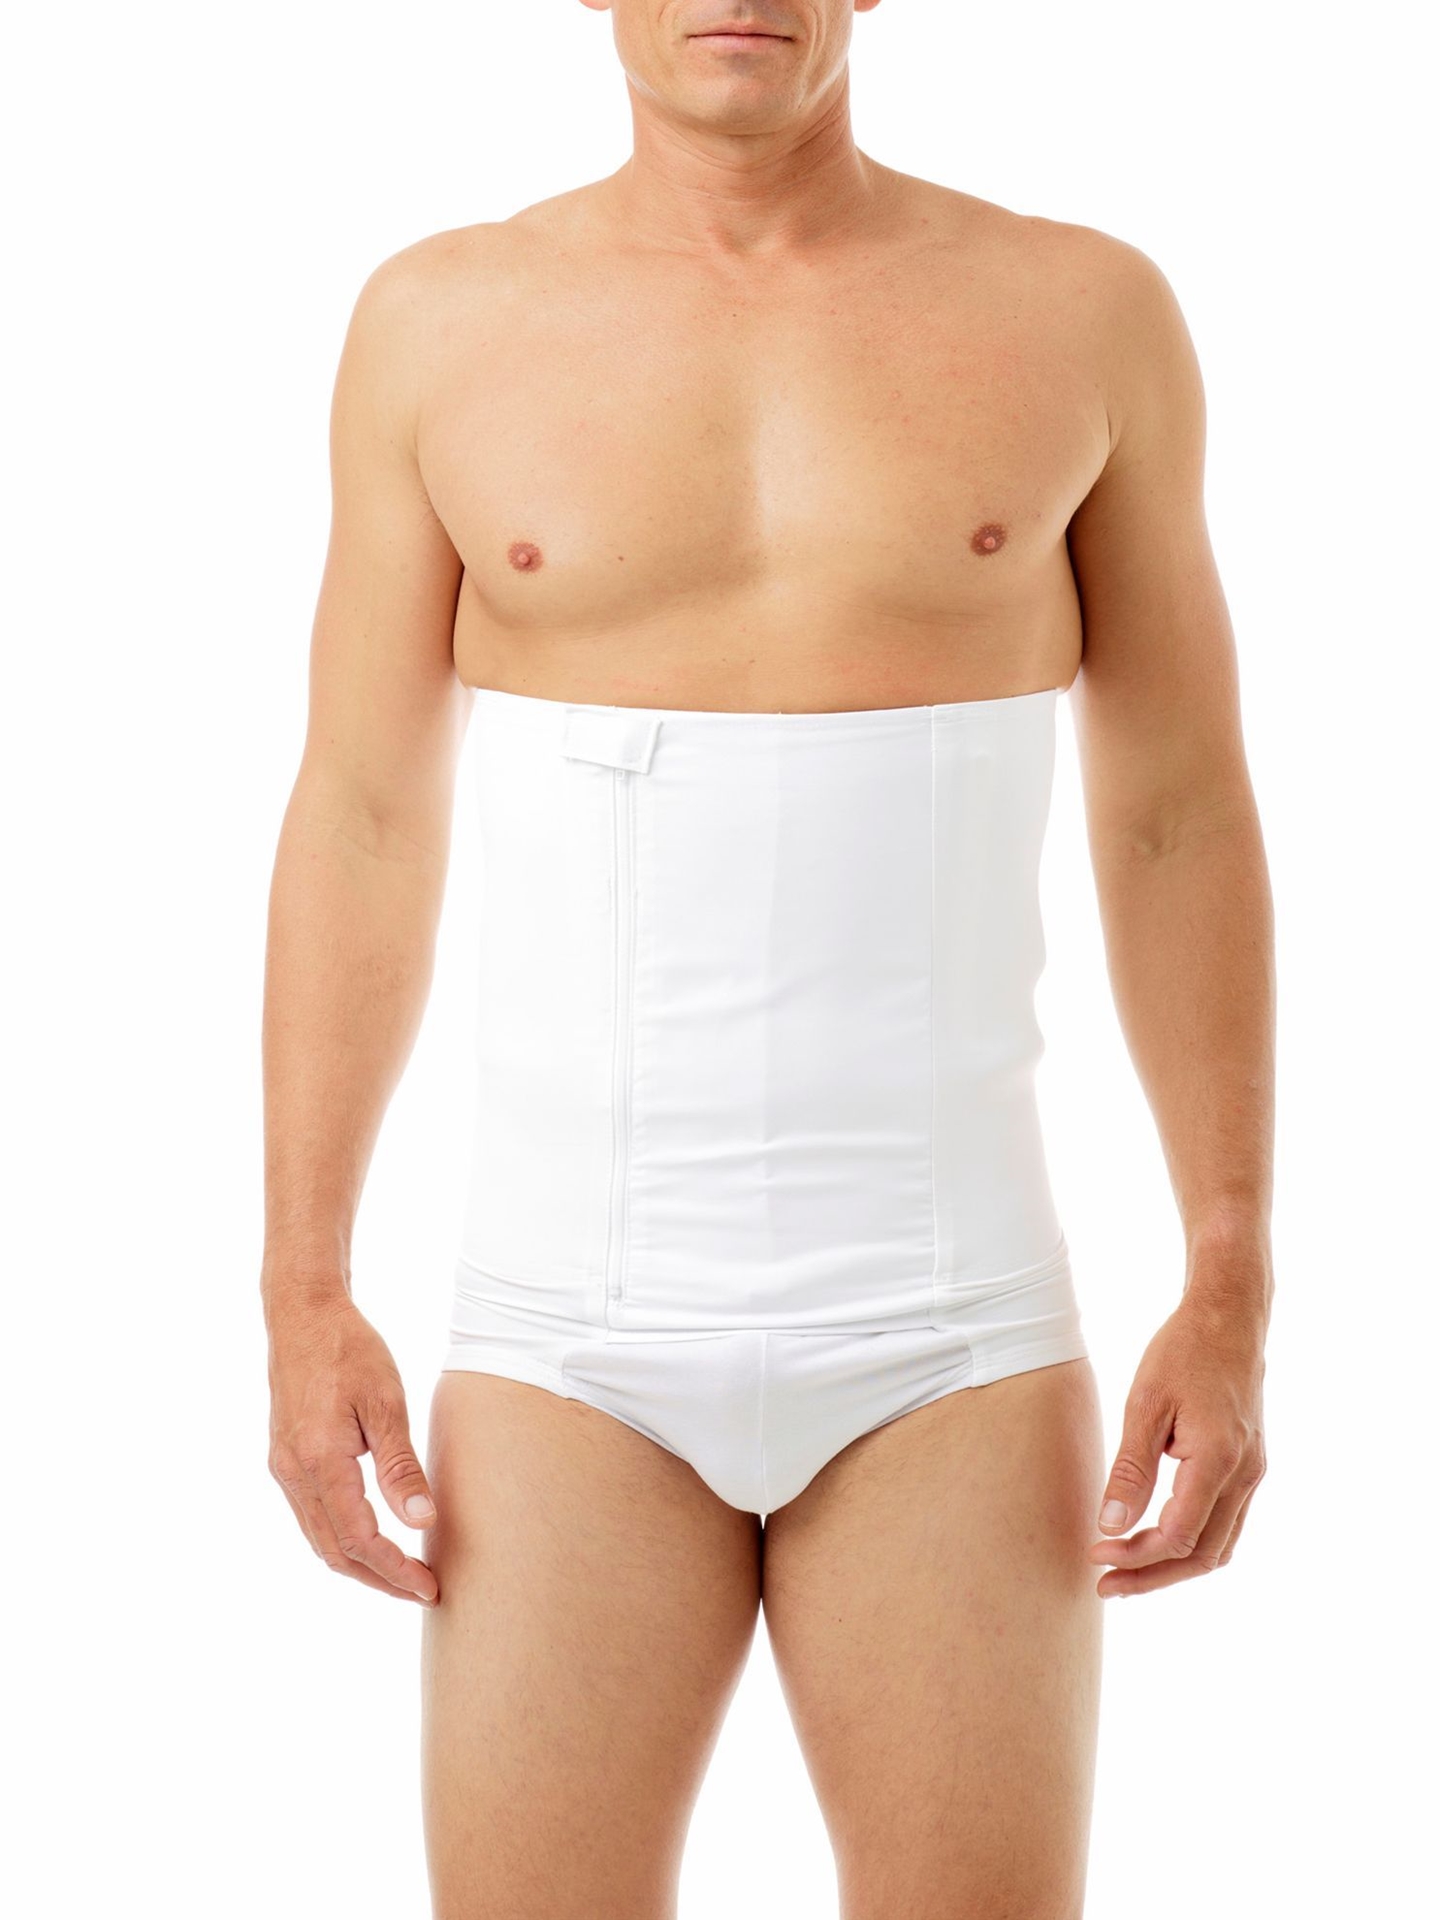 Compre Big Size Briefs Large Underwear For Men Underpants Cotton